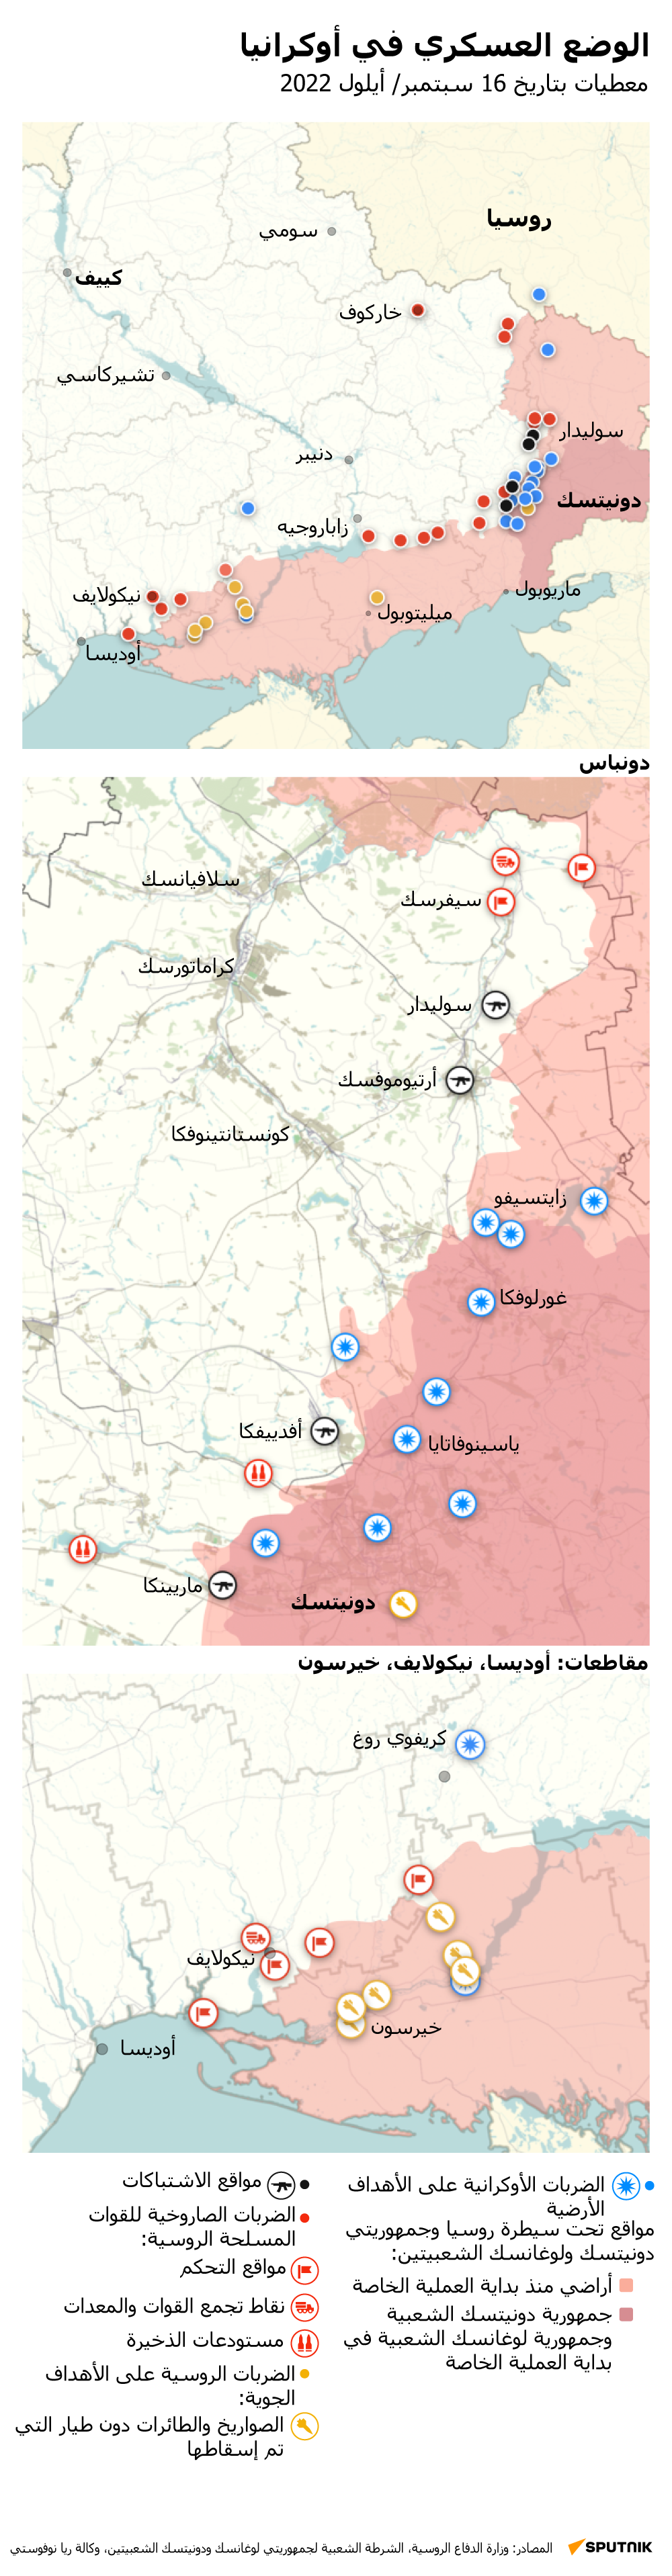 
خريطة العملية العسكرية الروسية الخاصة في أوكرانيا بتاريخ 16سبتمبر 2022 - سبوتنيك عربي